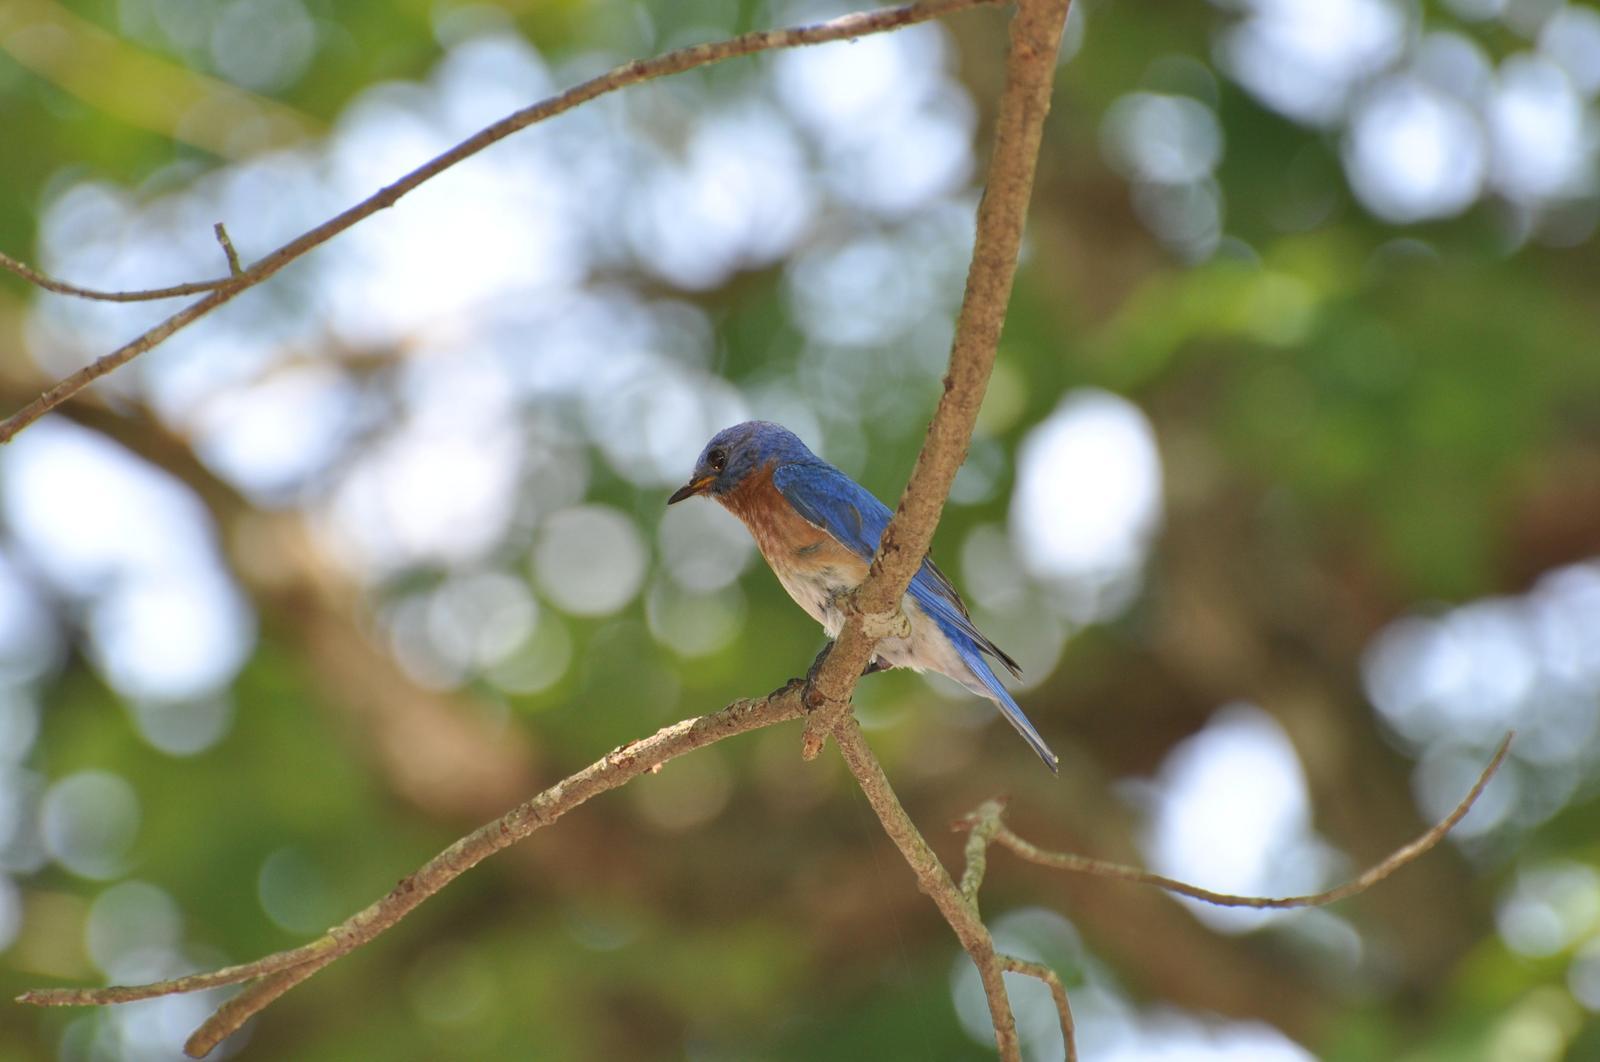 Eastern Bluebird Photo by Ashley Grubstein